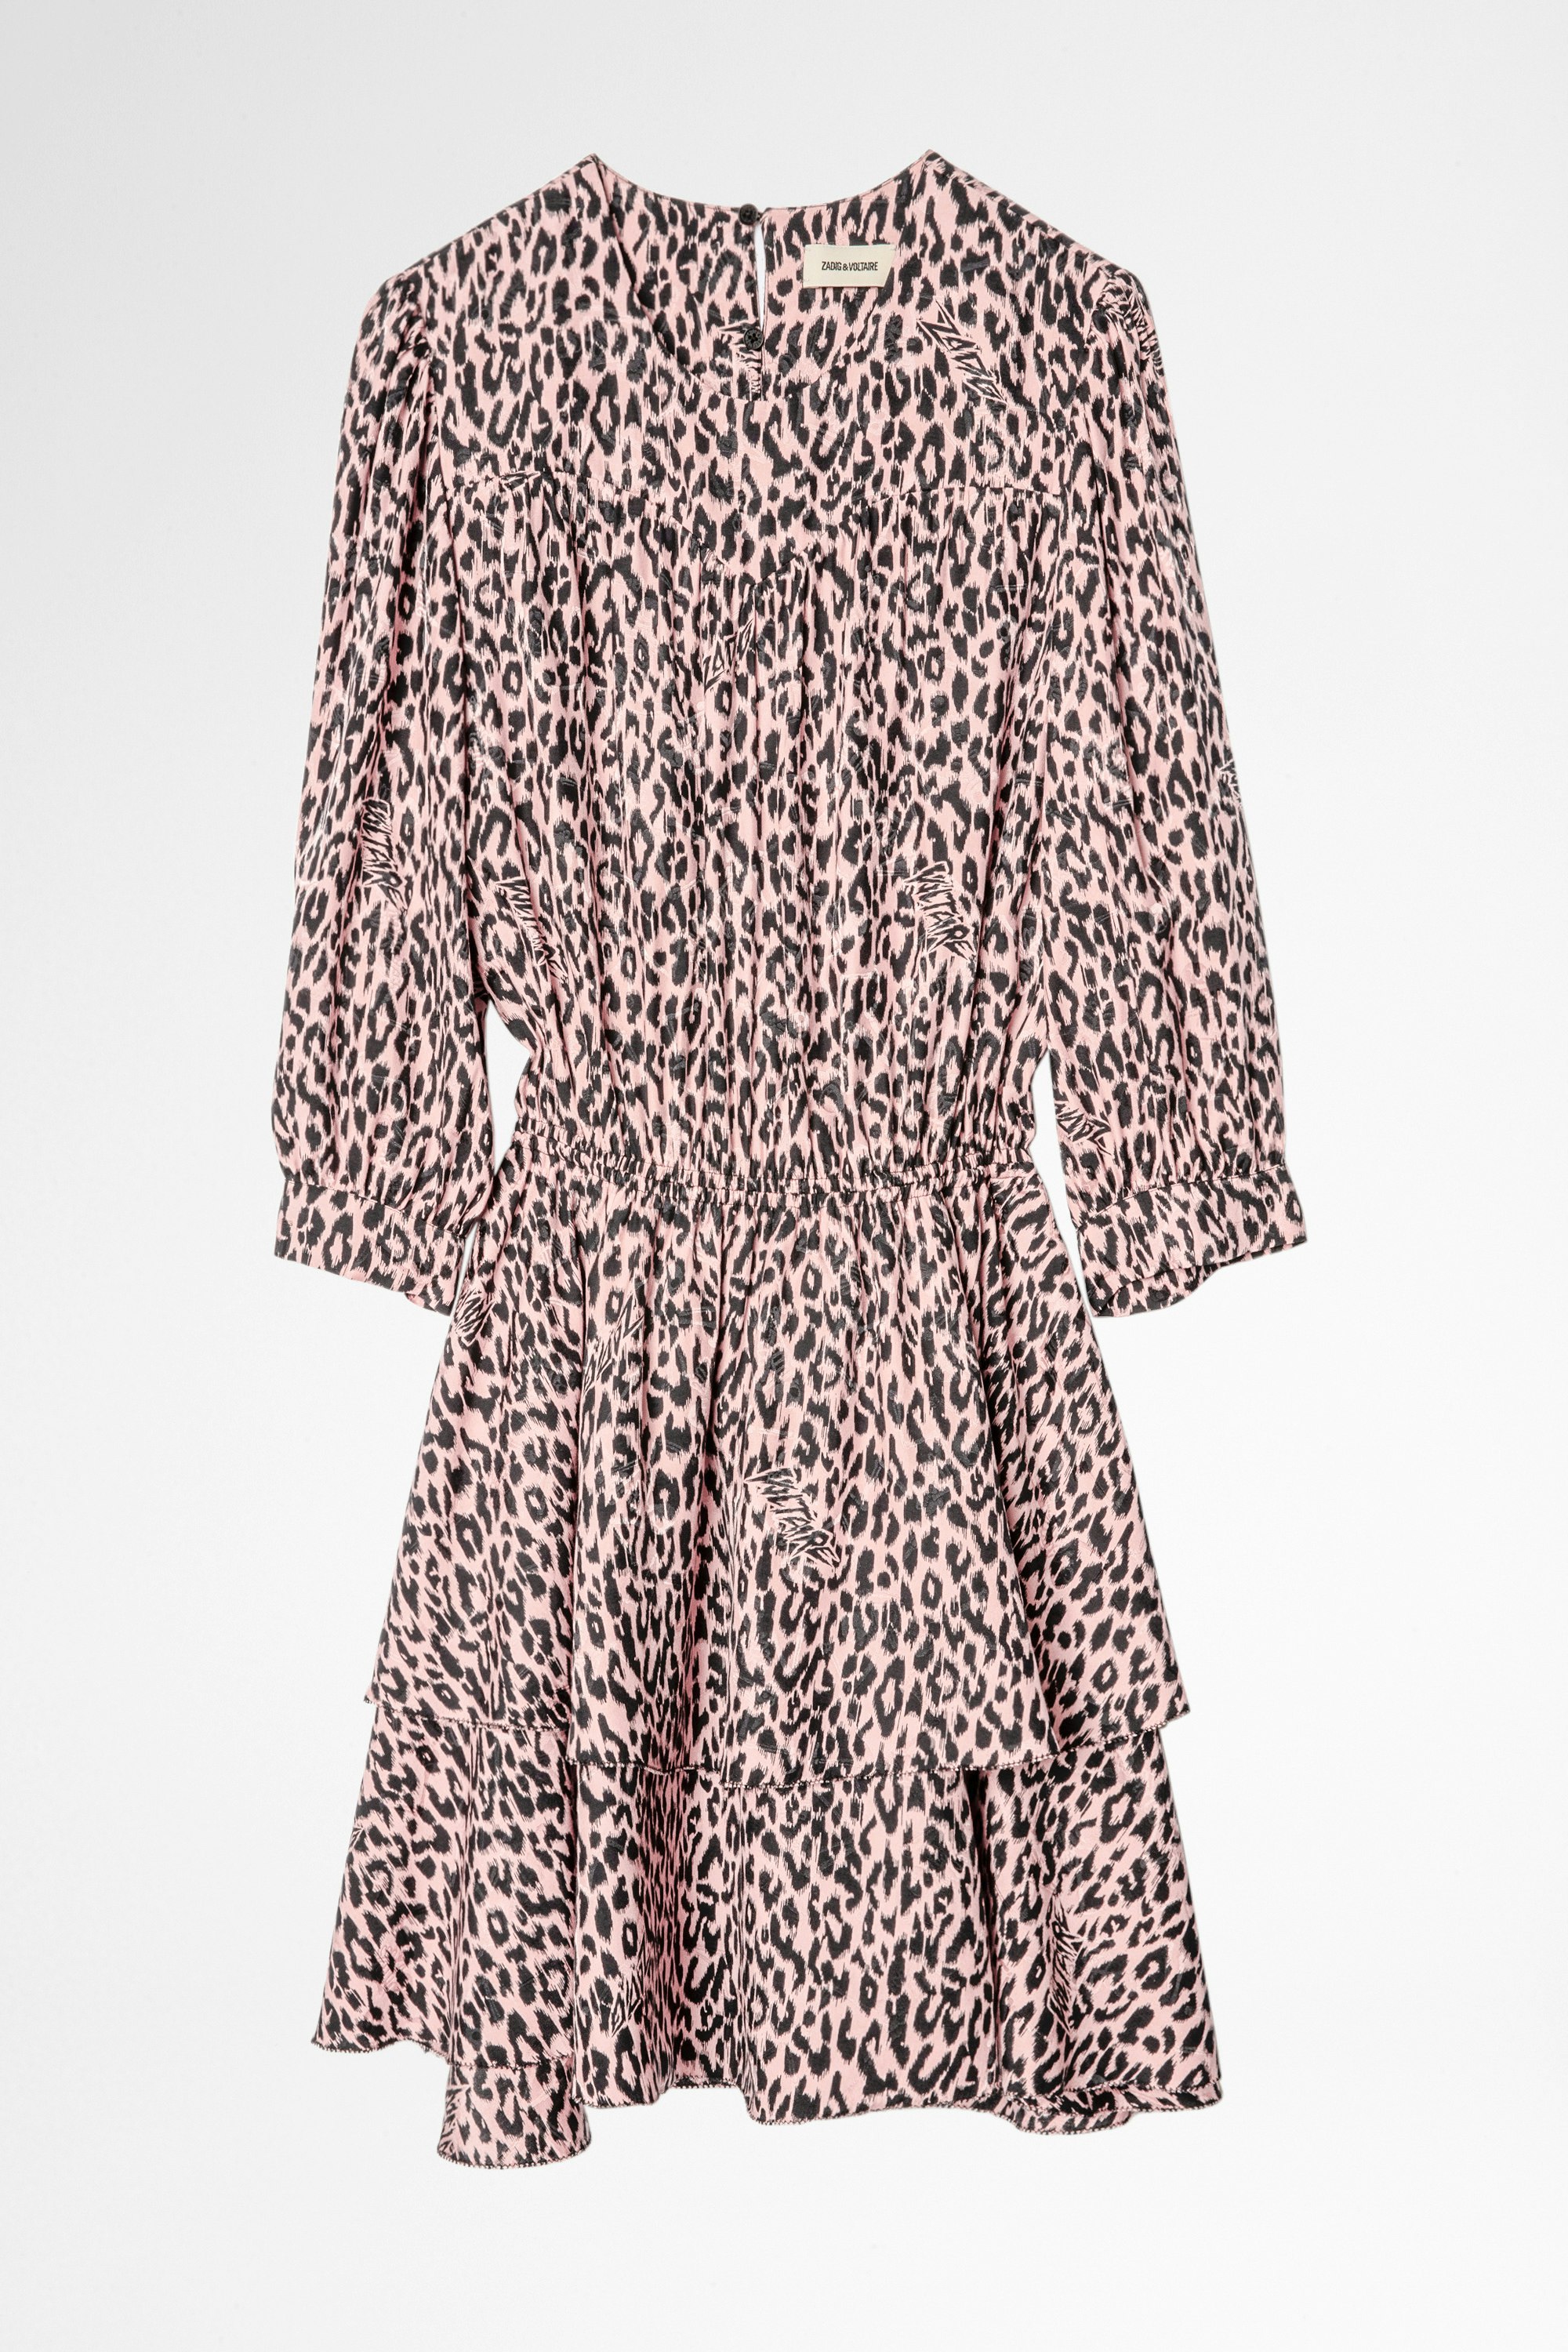 Rooka Skeleton Silk Dress Women’s leopard print ruffled mini dress